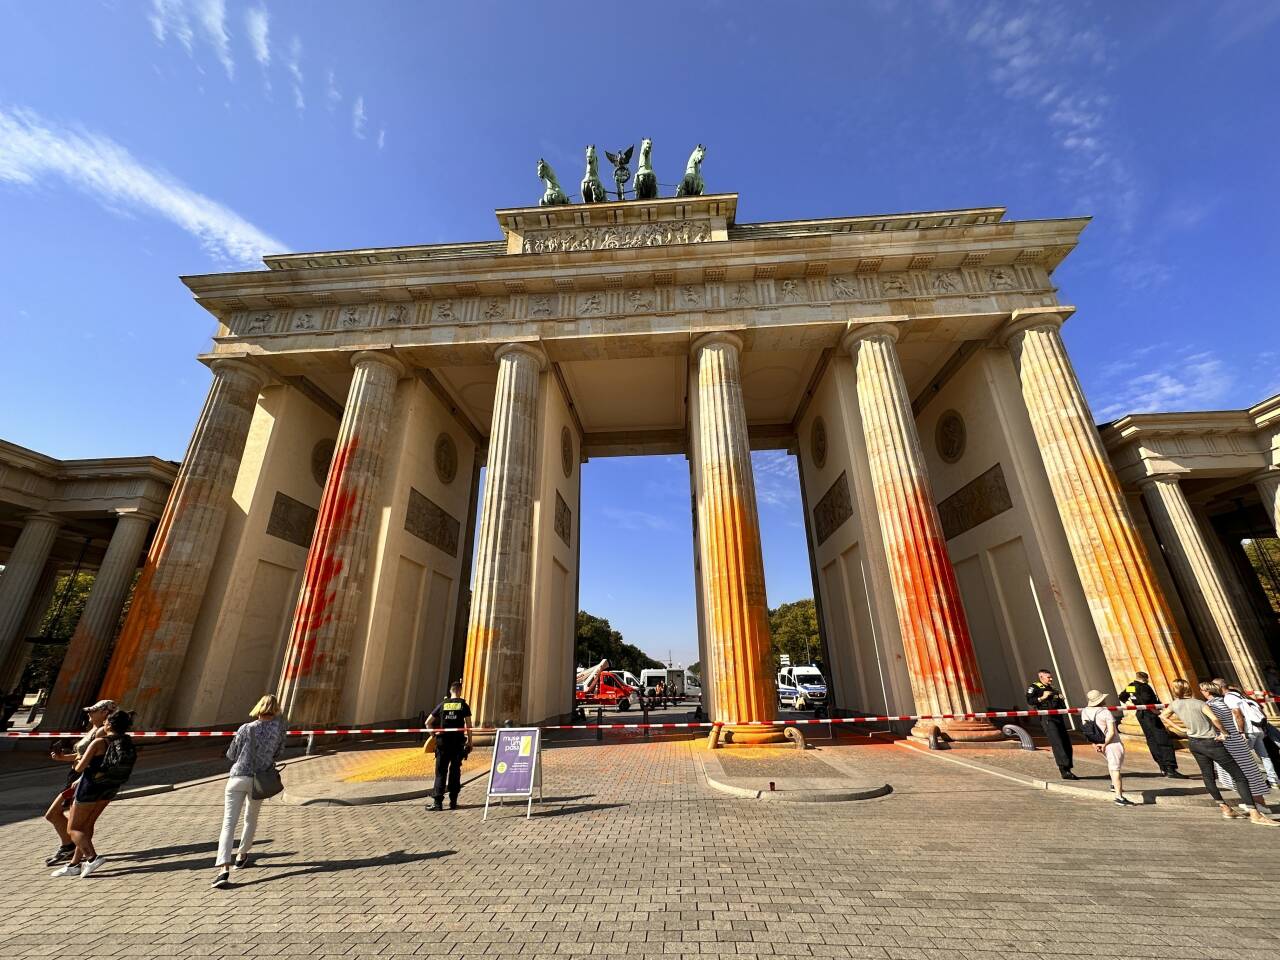 Medlemmer av Last Generation har sprayet maling på Brandenburger Tor i Berlin. Foto: Paul Zinken / DPA / NTB